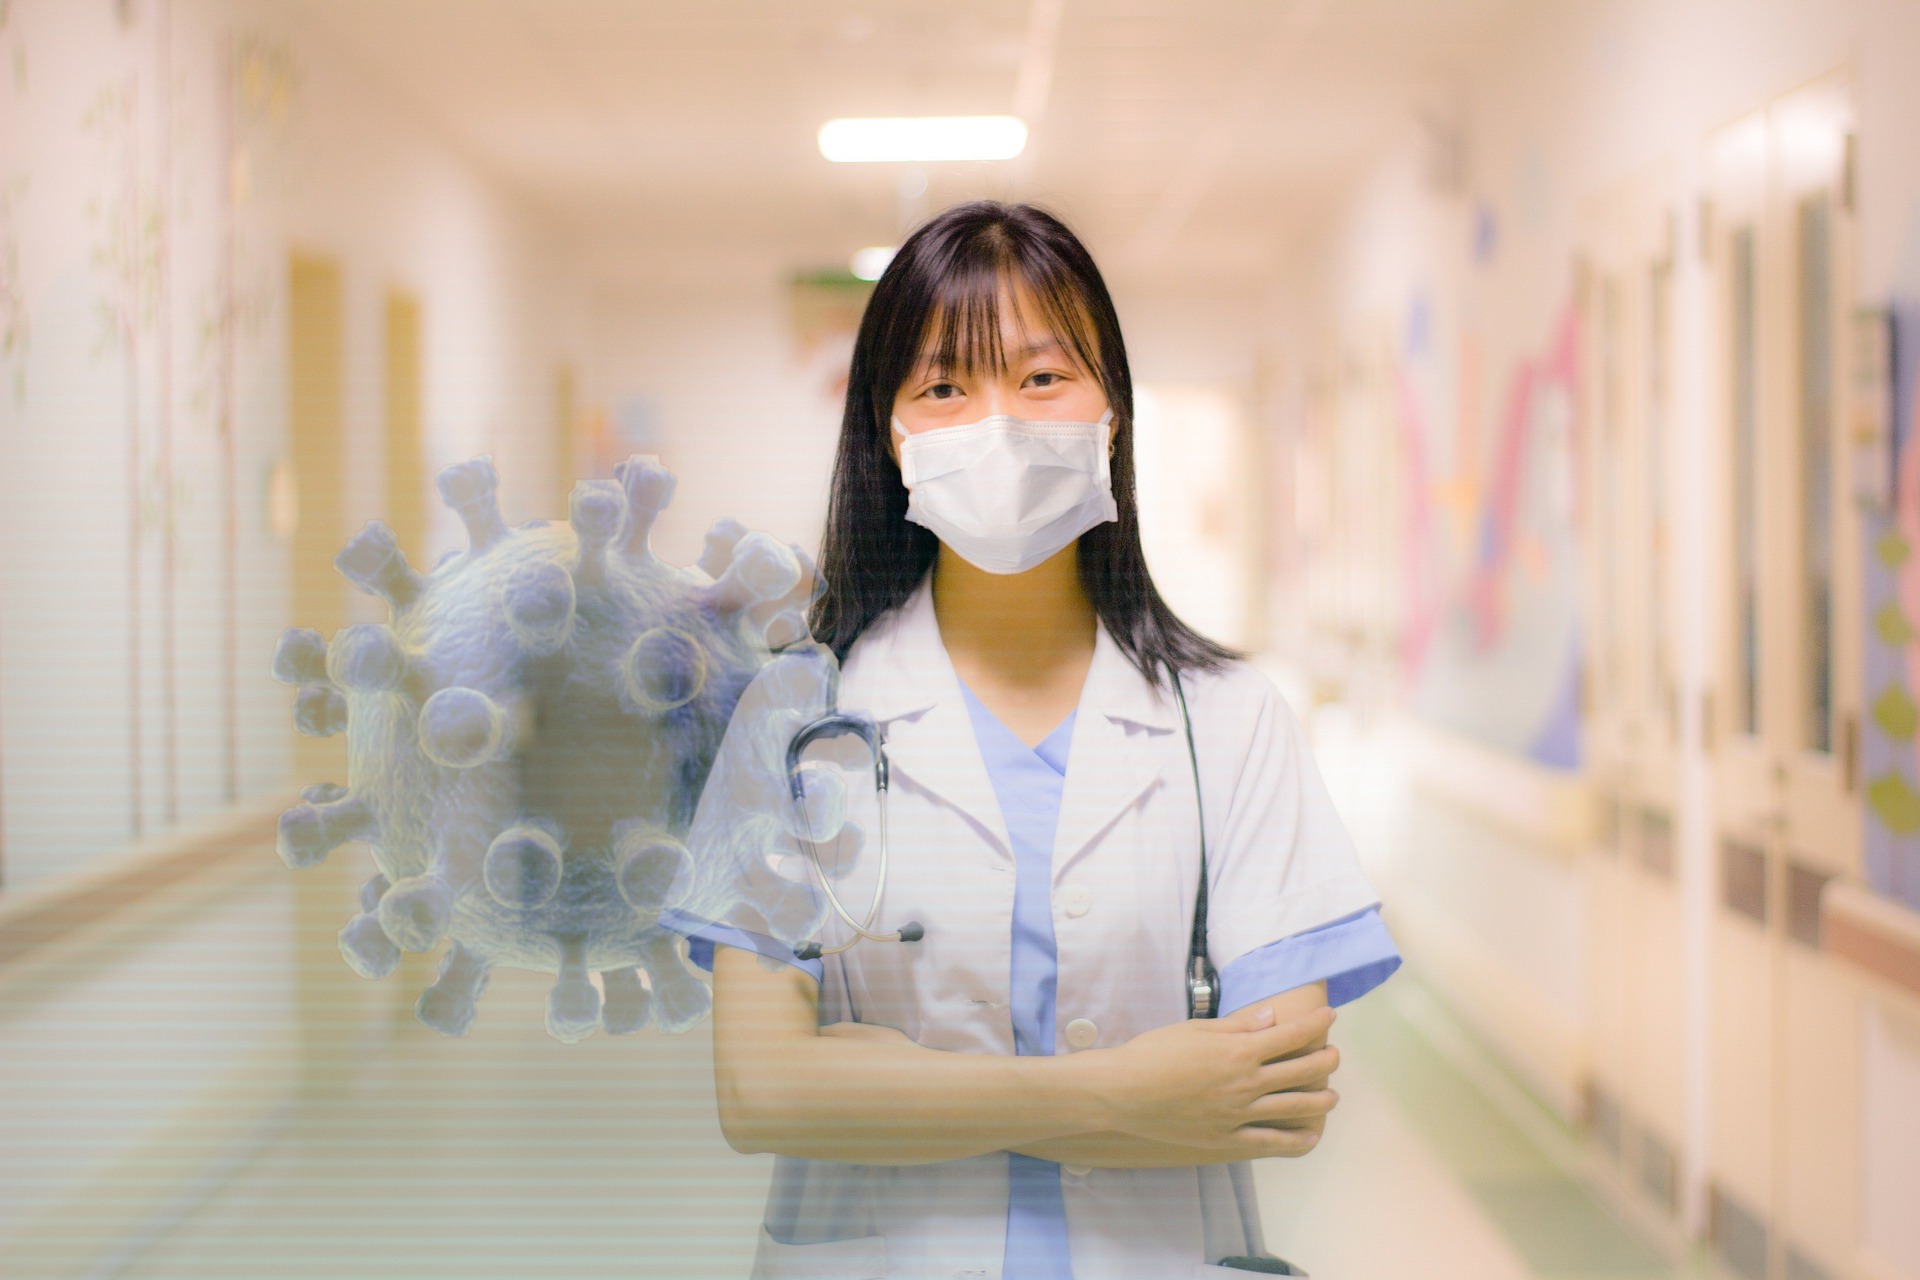 Durante la pandemia de Covid-19, Taiwán dio apoyo a distintos países del mundo con mascarillas y productos médicos necesarios | Foto: Pixabay 